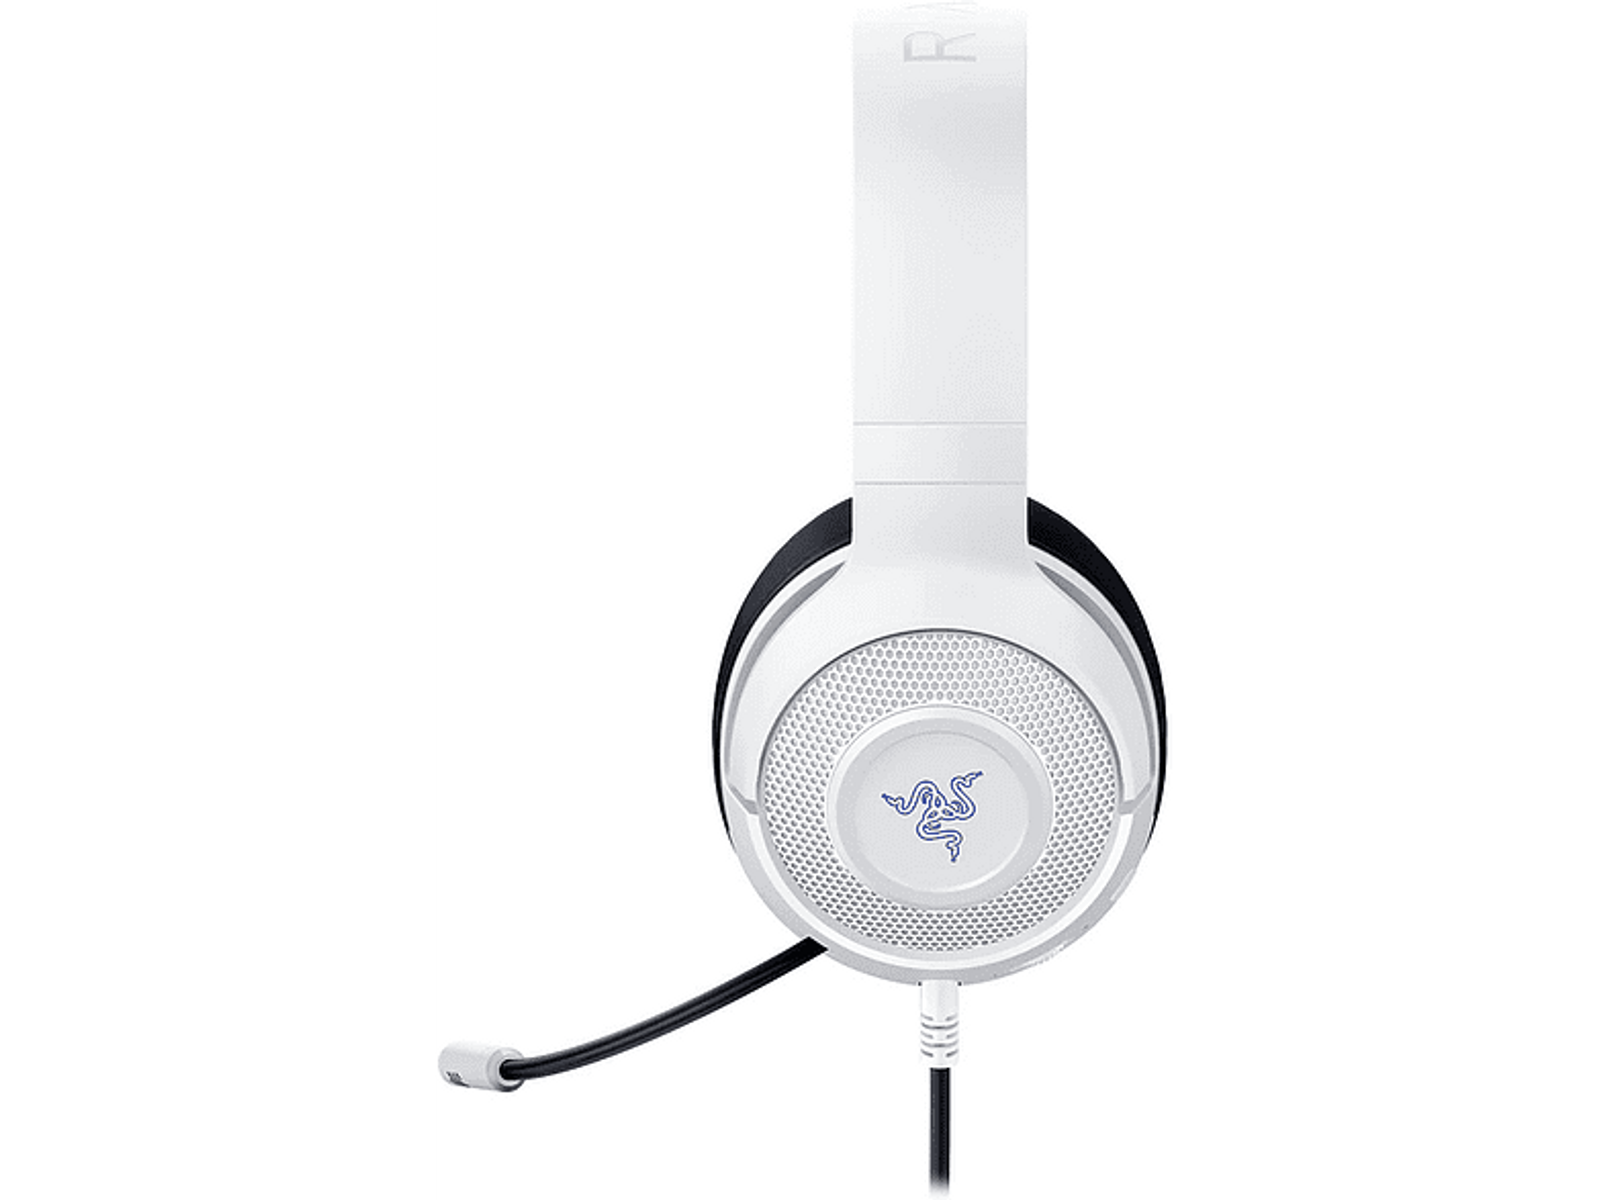 KRAKEN RAZER CONSOLE Weiß/Blau FOR Gaming Over-ear RZ04-02890500-R3M1 Headset X WHITE,